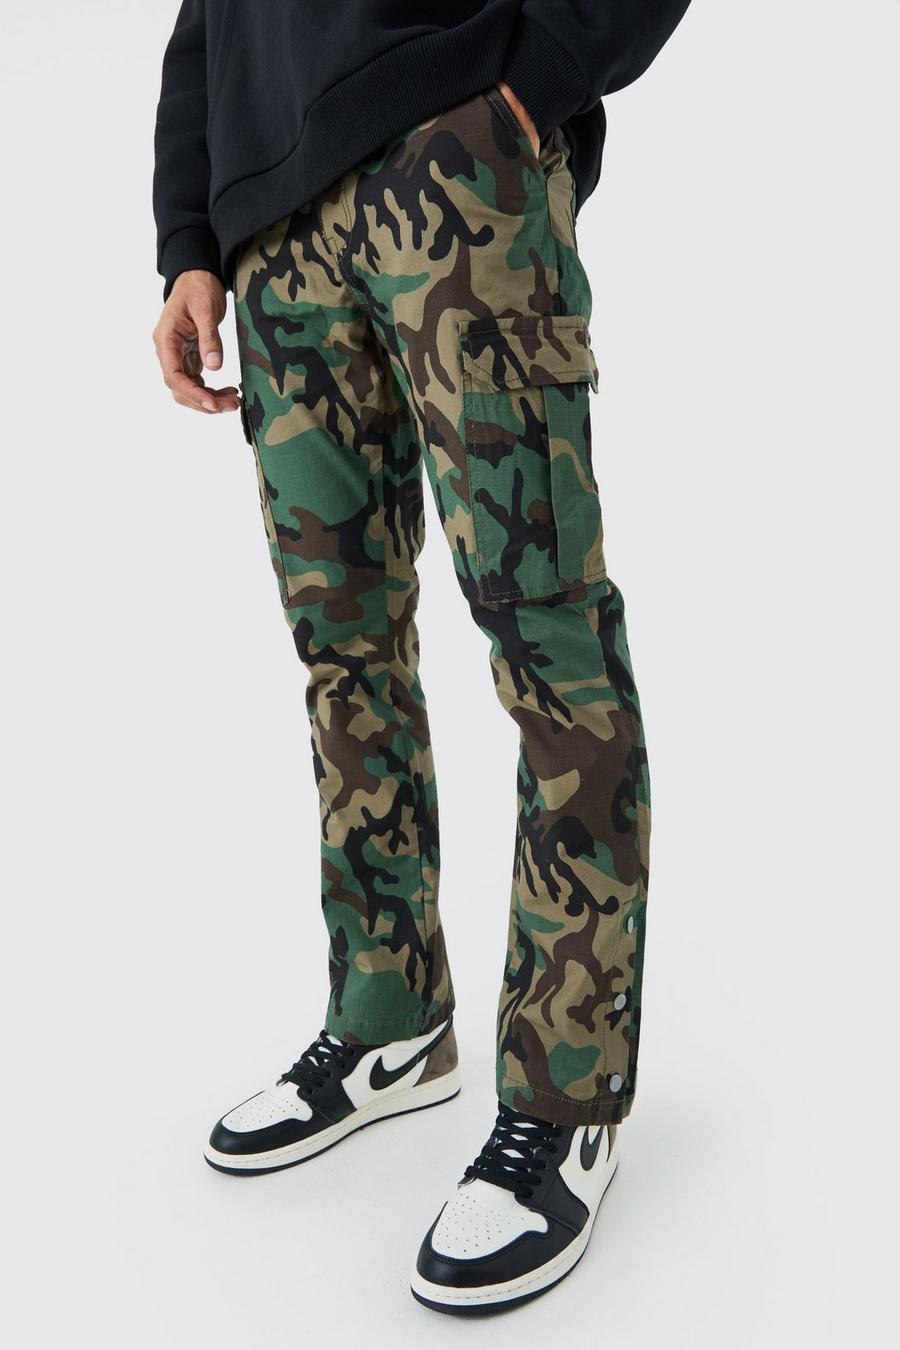 Pantaloni Cargo Slim Fit a zampa in nylon ripstop in fantasia militare con bottoni a pressione sul fondo, Khaki image number 1